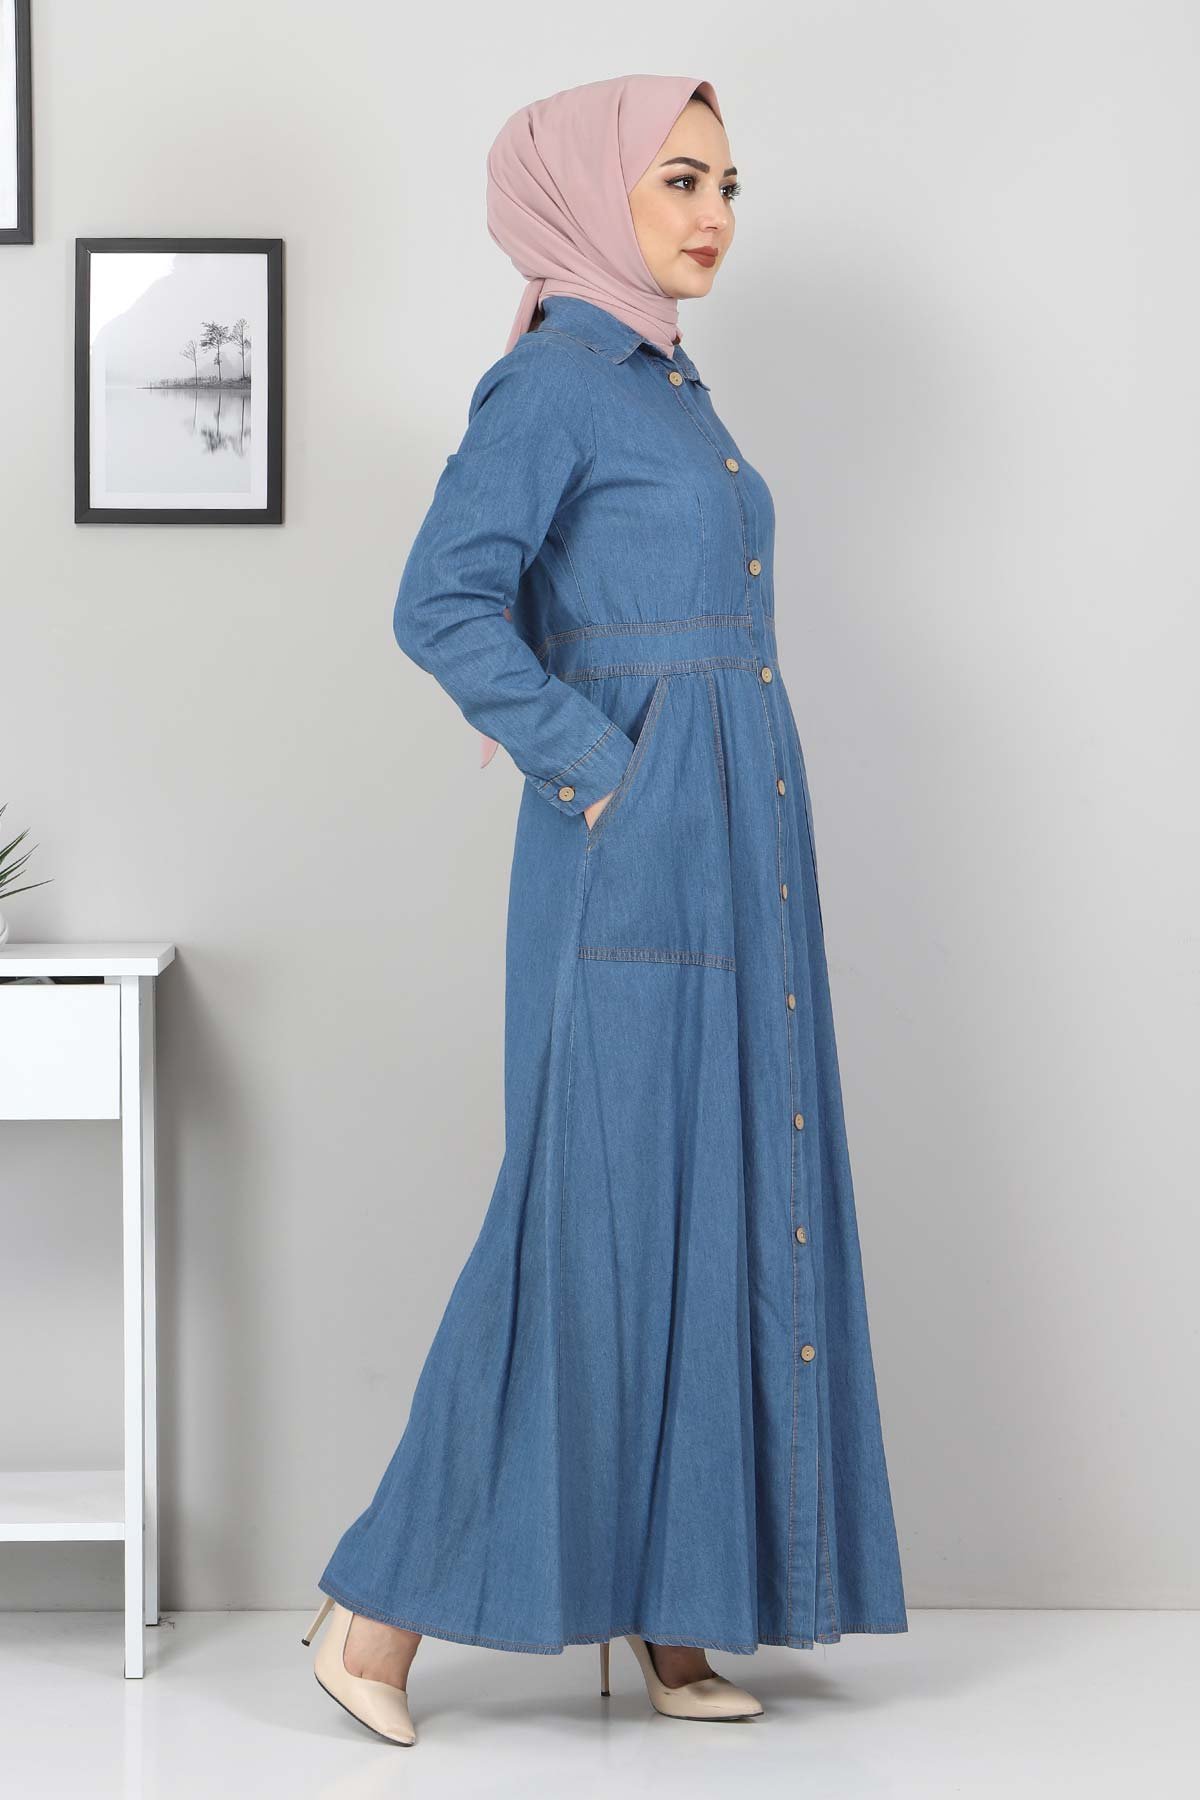 Boydan Düğmeli Kot Elbise TSD0389 Açık Mavi